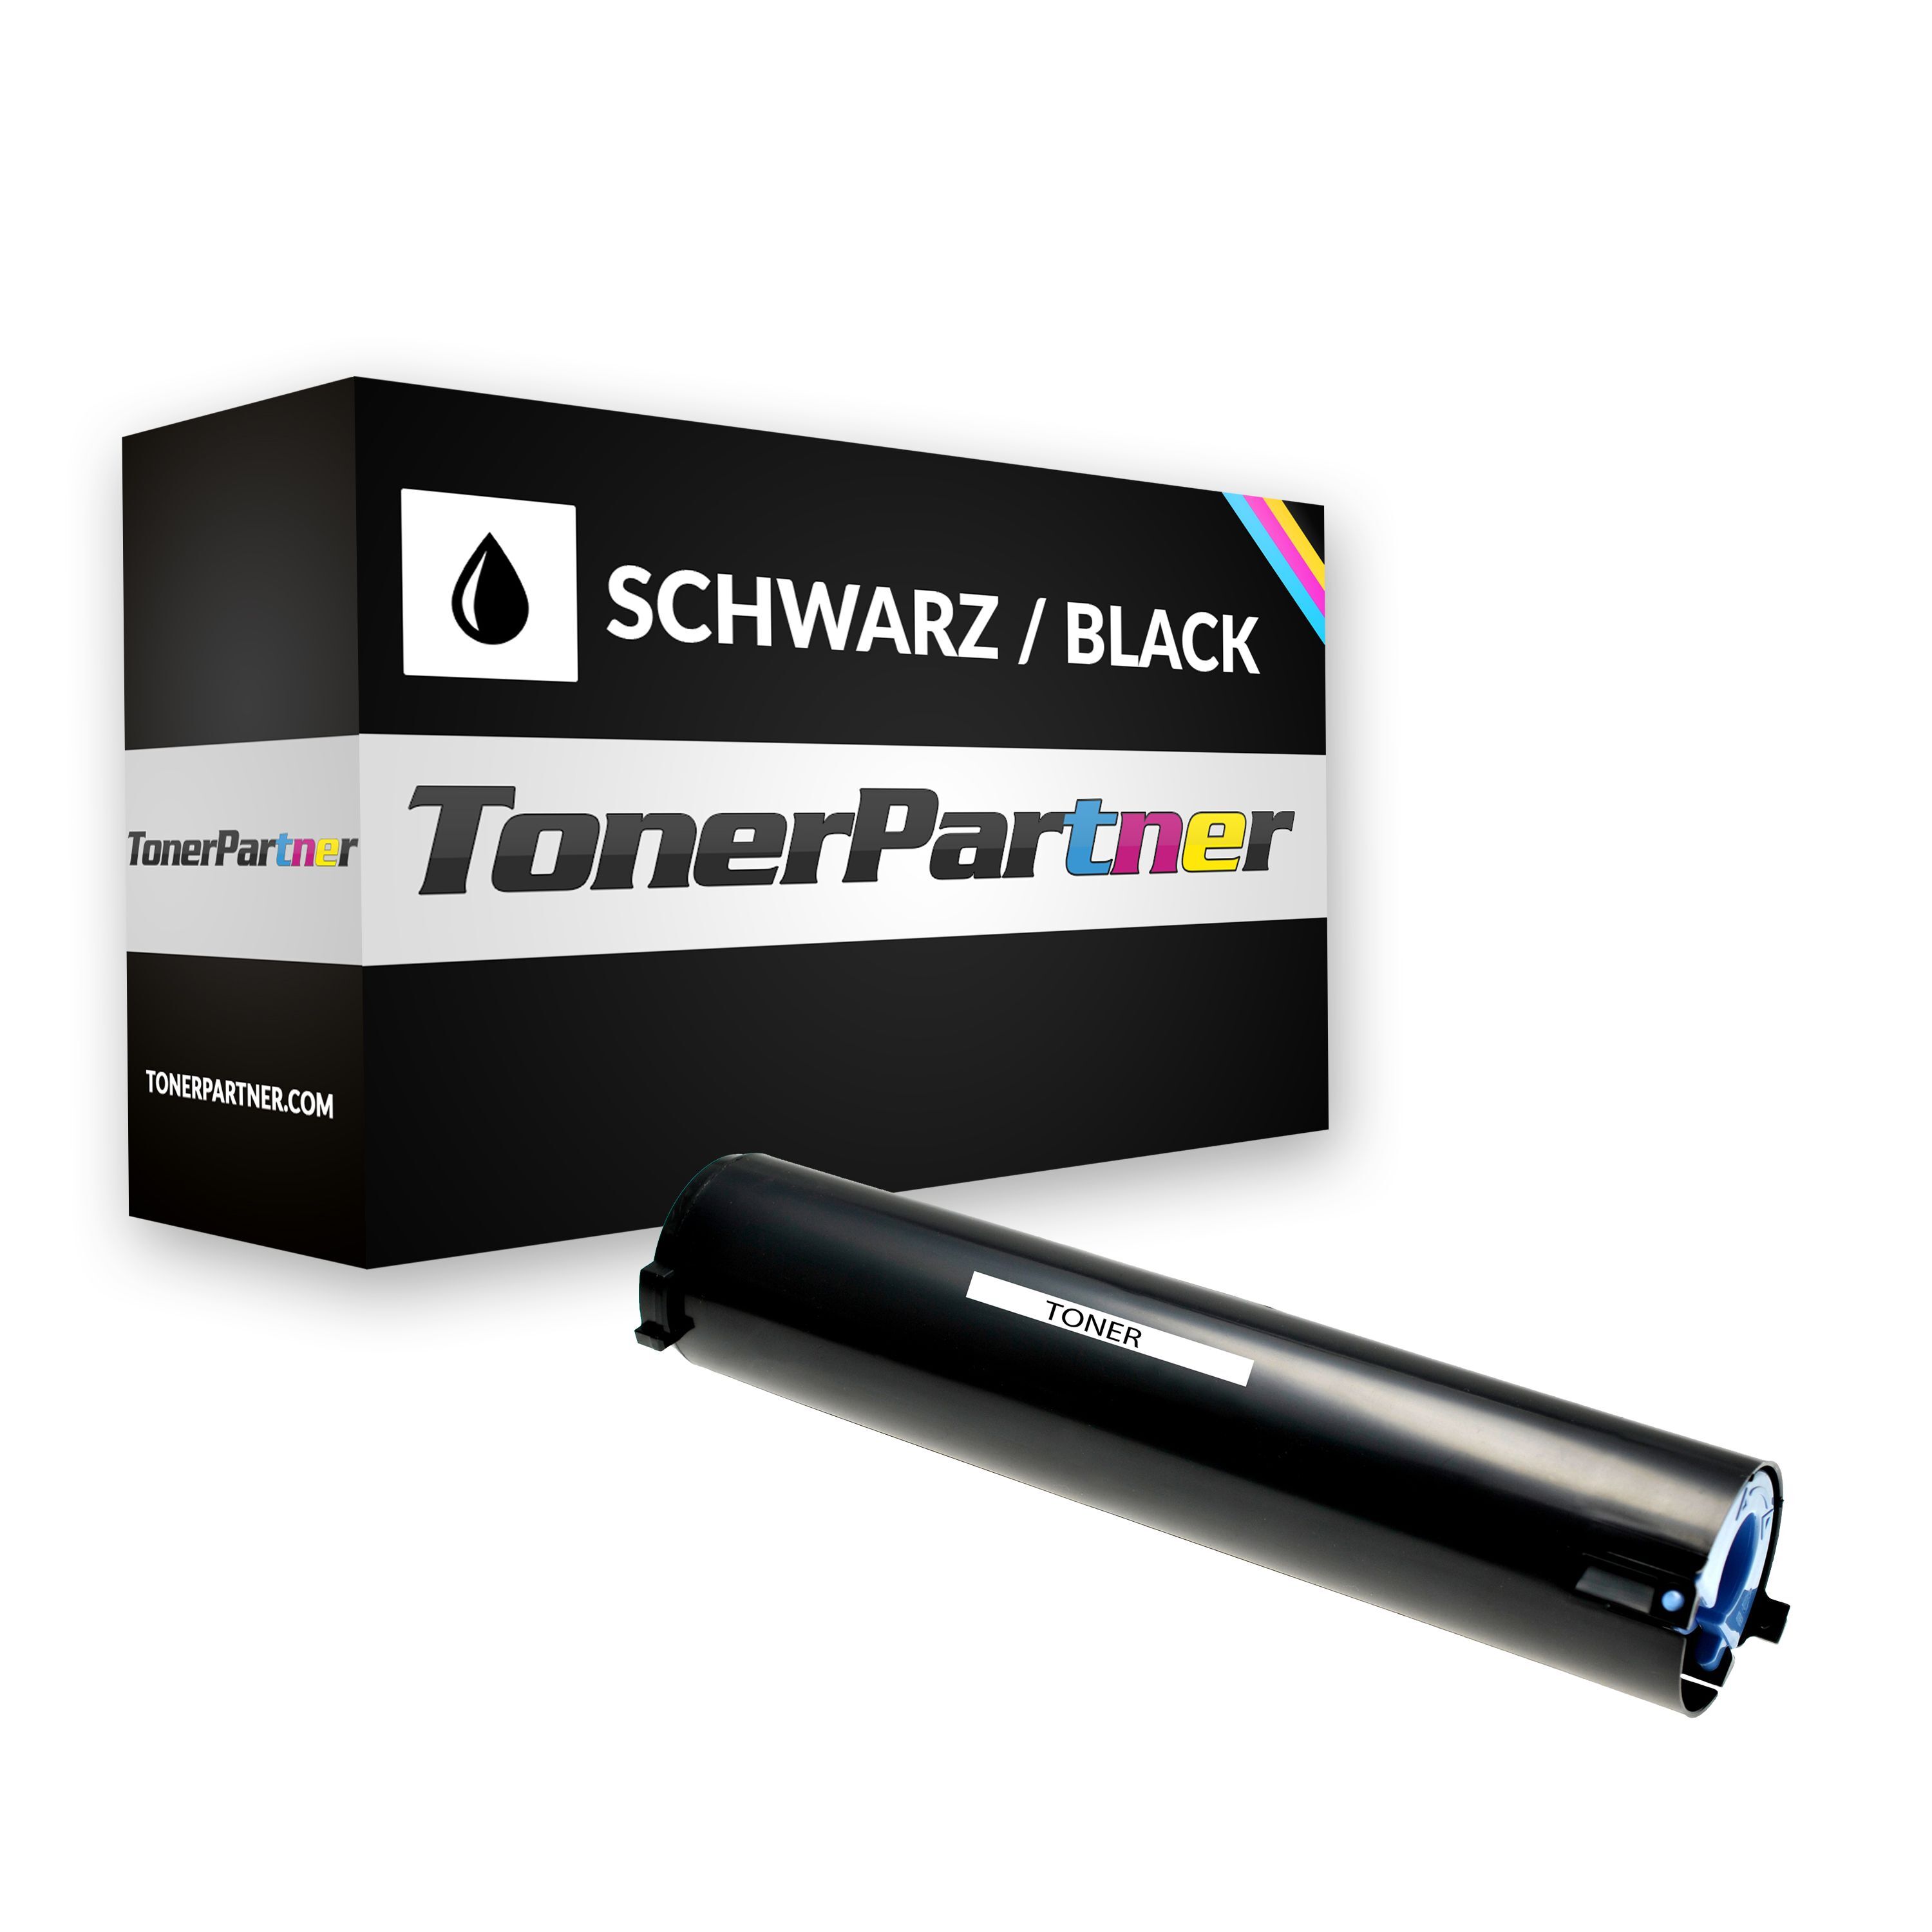 TonerPartner Kompatibel zu Canon imageRUNNER 1270 f Toner (C-EXV 7 / 7814 A 002) schwarz, 5.300 Seiten, 0,72 Rp pro Seite, Inhalt: 300 g von TonerPartner